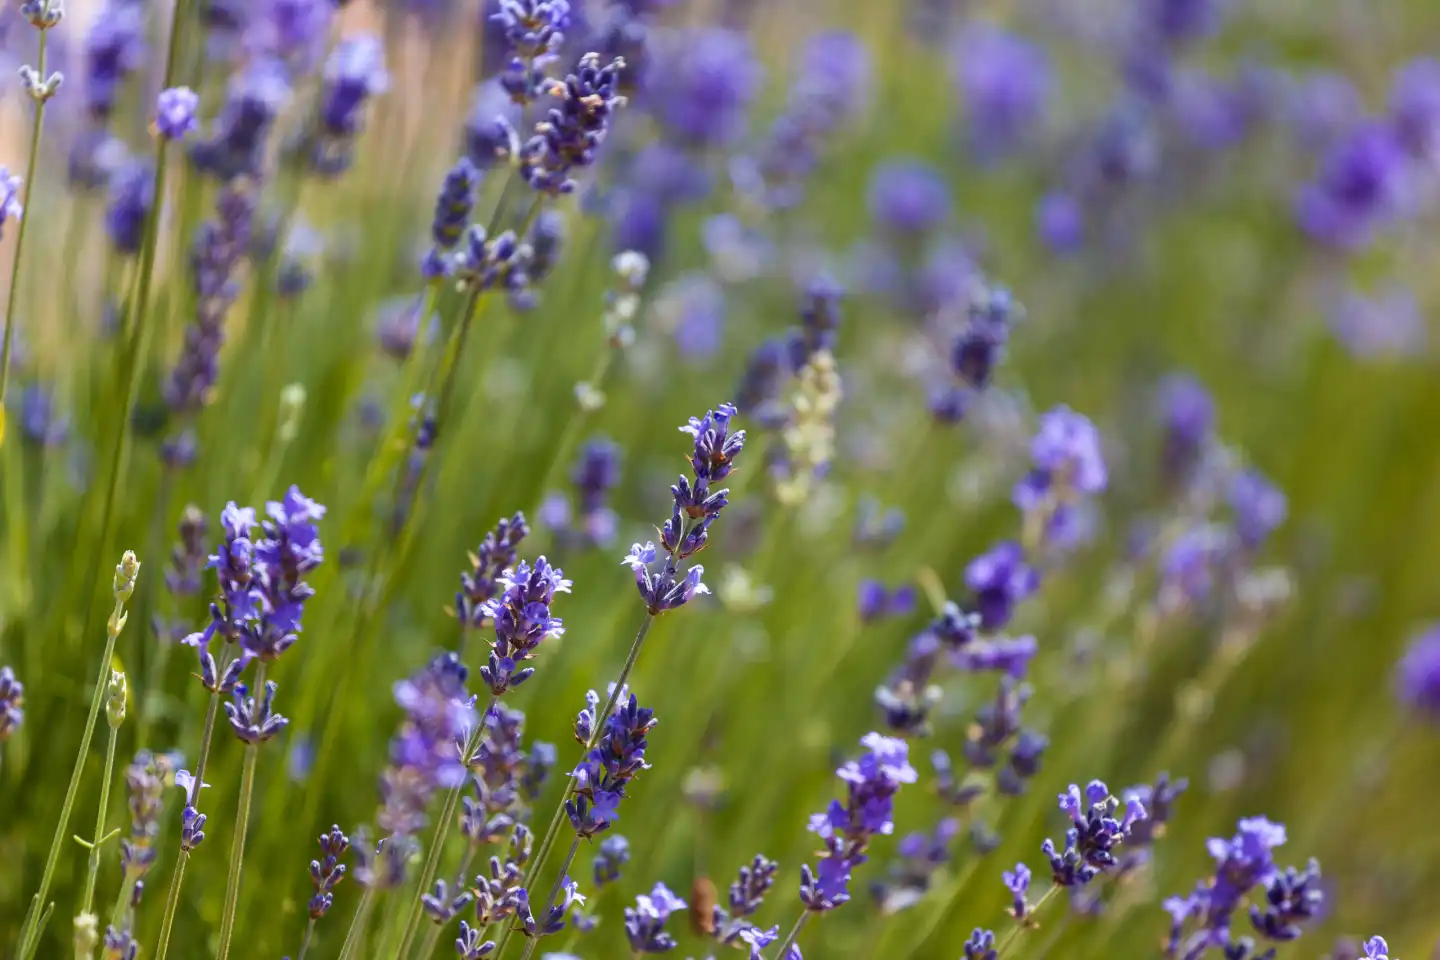 Lavender flowers in summer